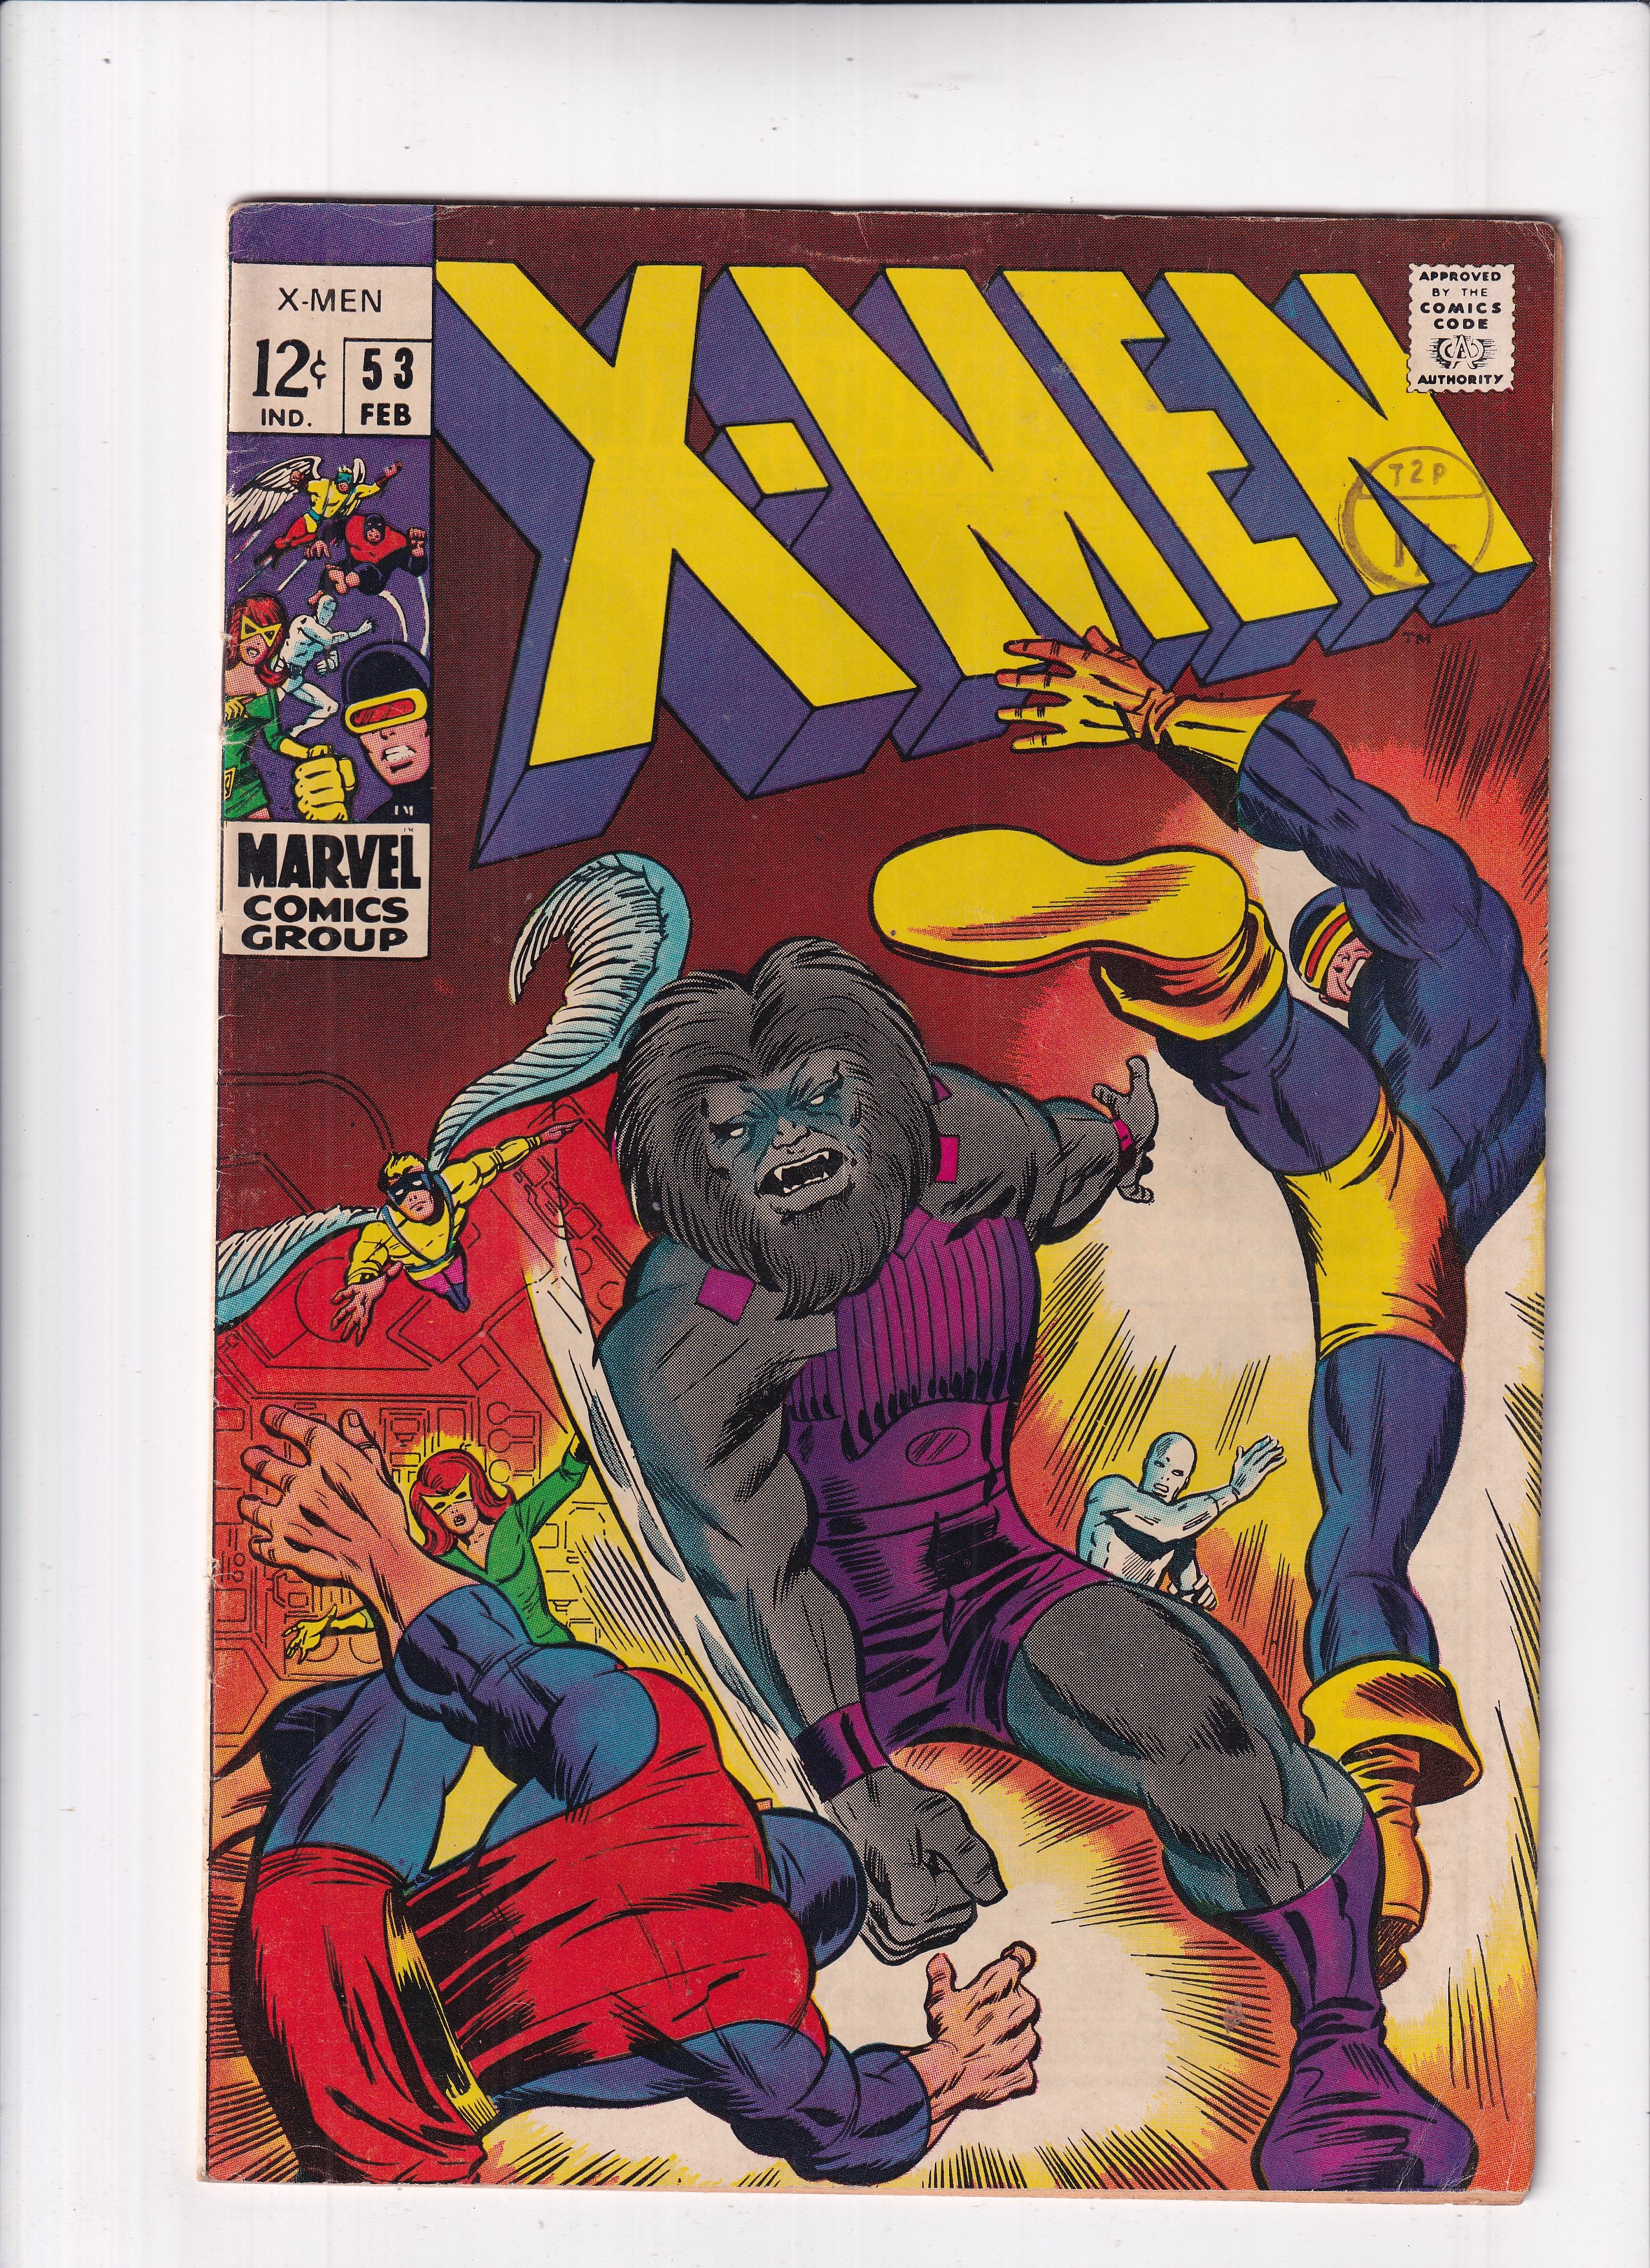 X-MEN #53 - Slab City Comics 